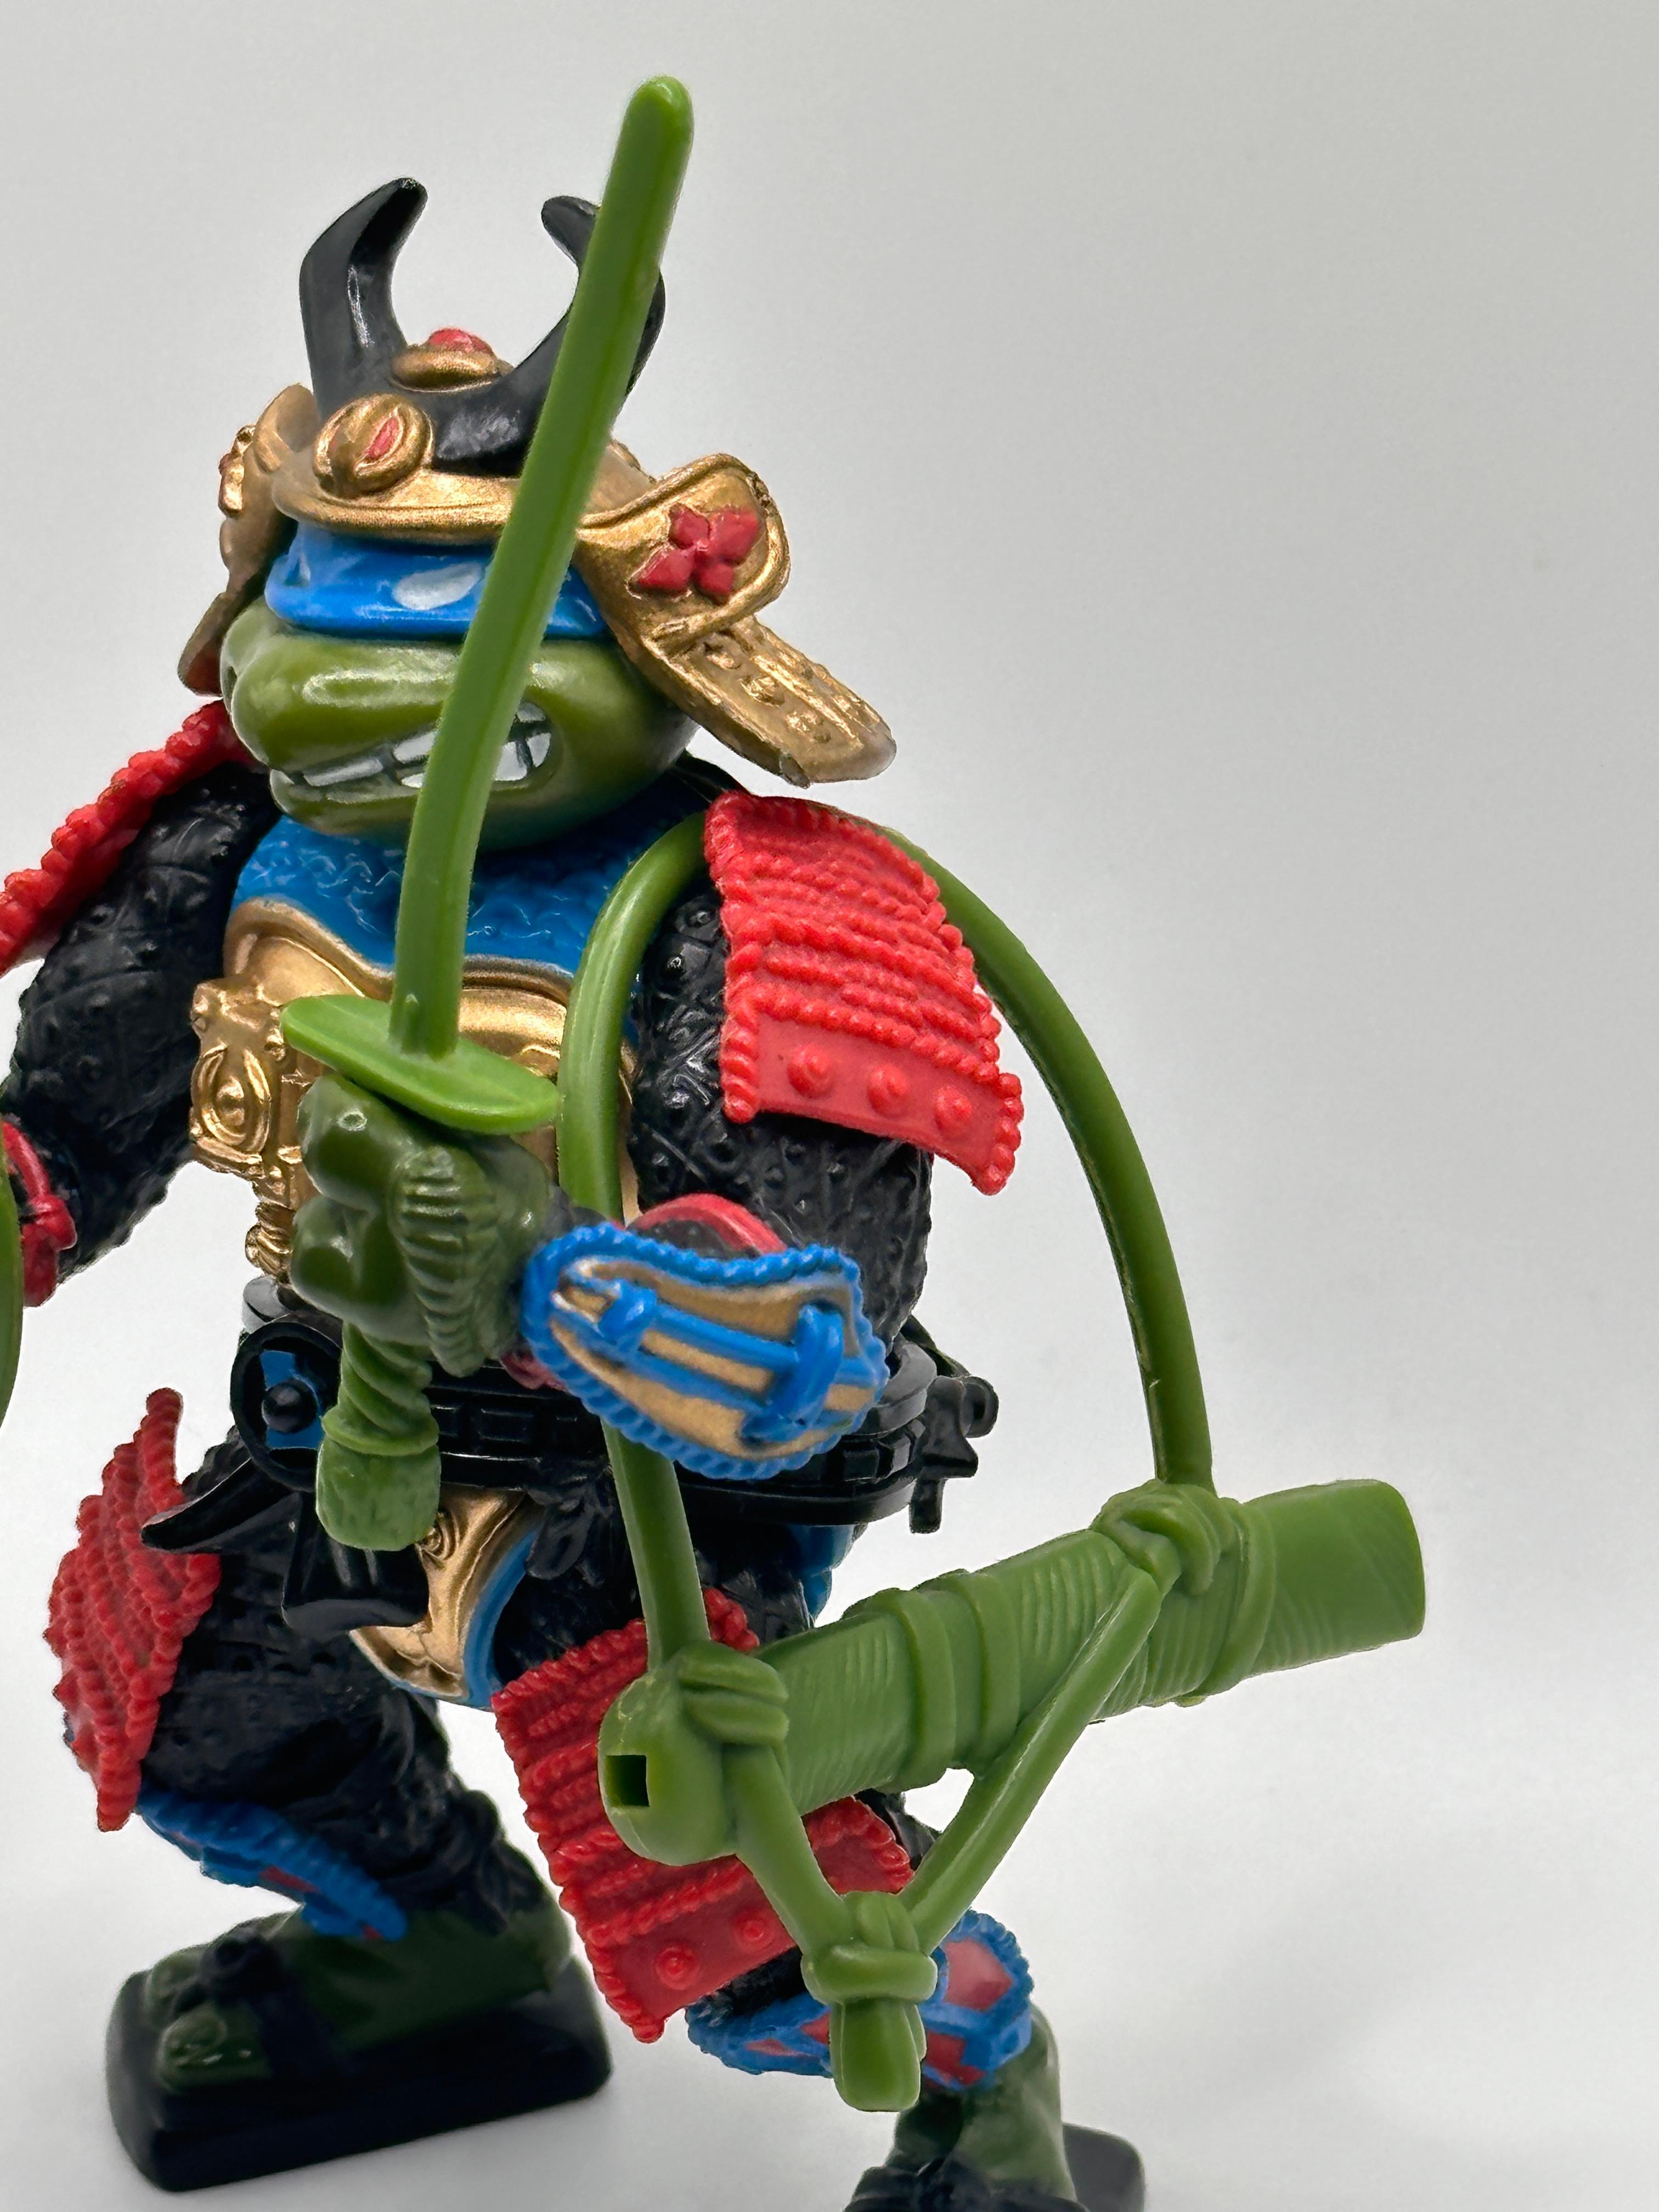 1990 TMNT/Teenage Mutant Ninja Turtles Leo the Sewer Samurai